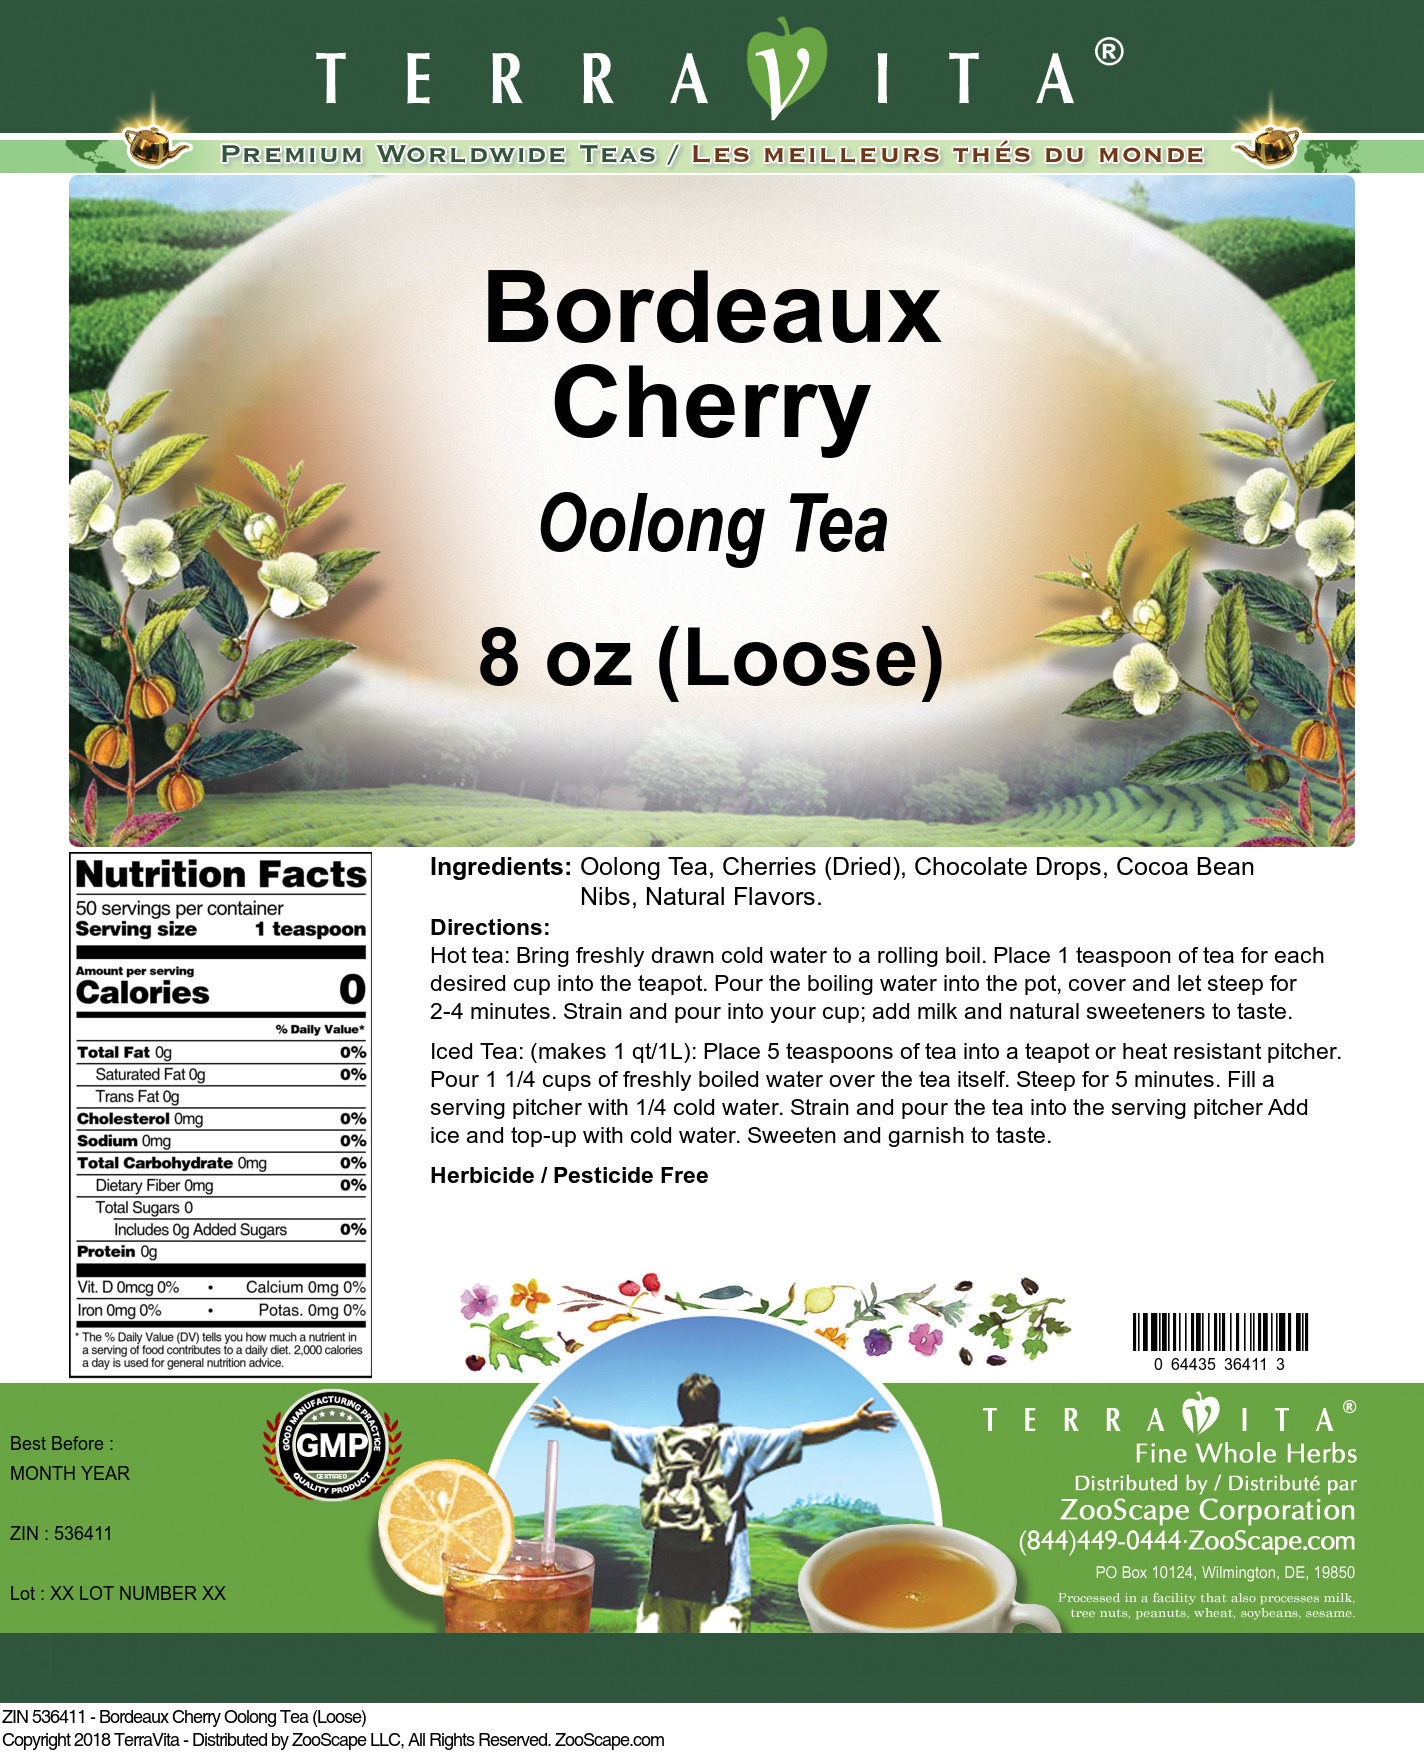 Bordeaux Cherry Oolong Tea (Loose) - Label